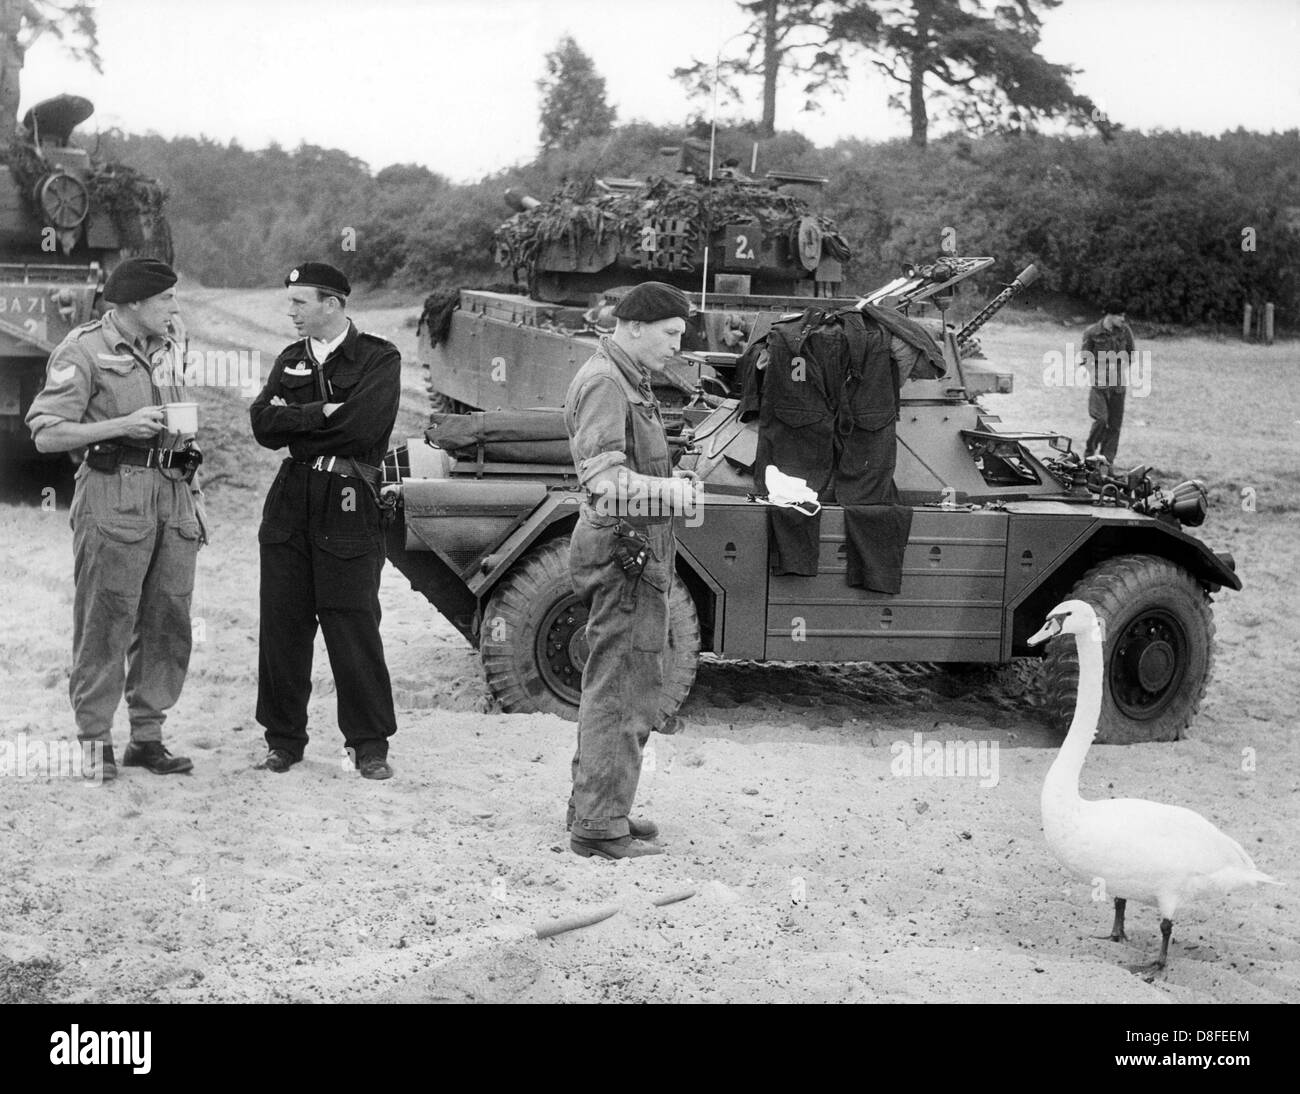 Ein Schwan Consorten mit britischen Soldaten, die ein gemeinsames britisch-amerikanischen Manöver in Berlin mit ihren militärischen Fahrzeugen am 28. August 1963 Teilnahme warten. Stockfoto